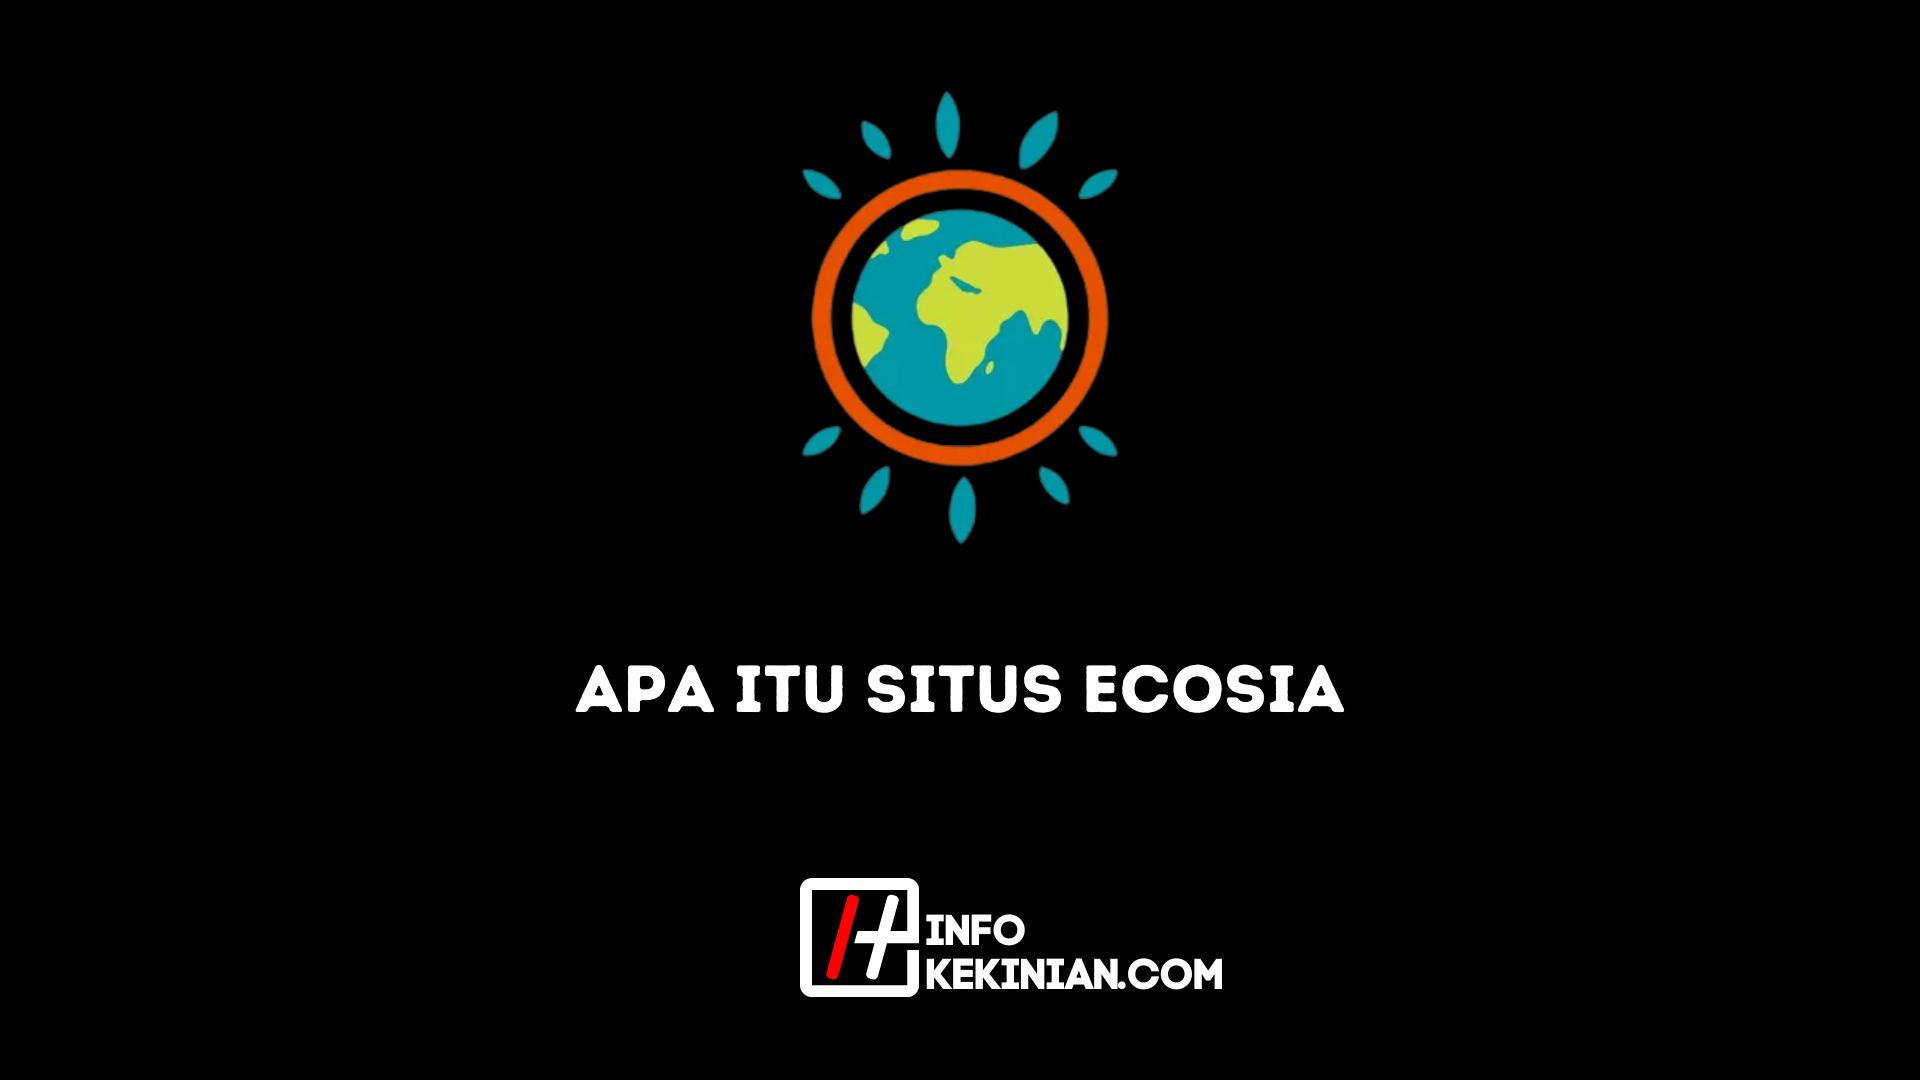 Apa itu Situs Ecosia